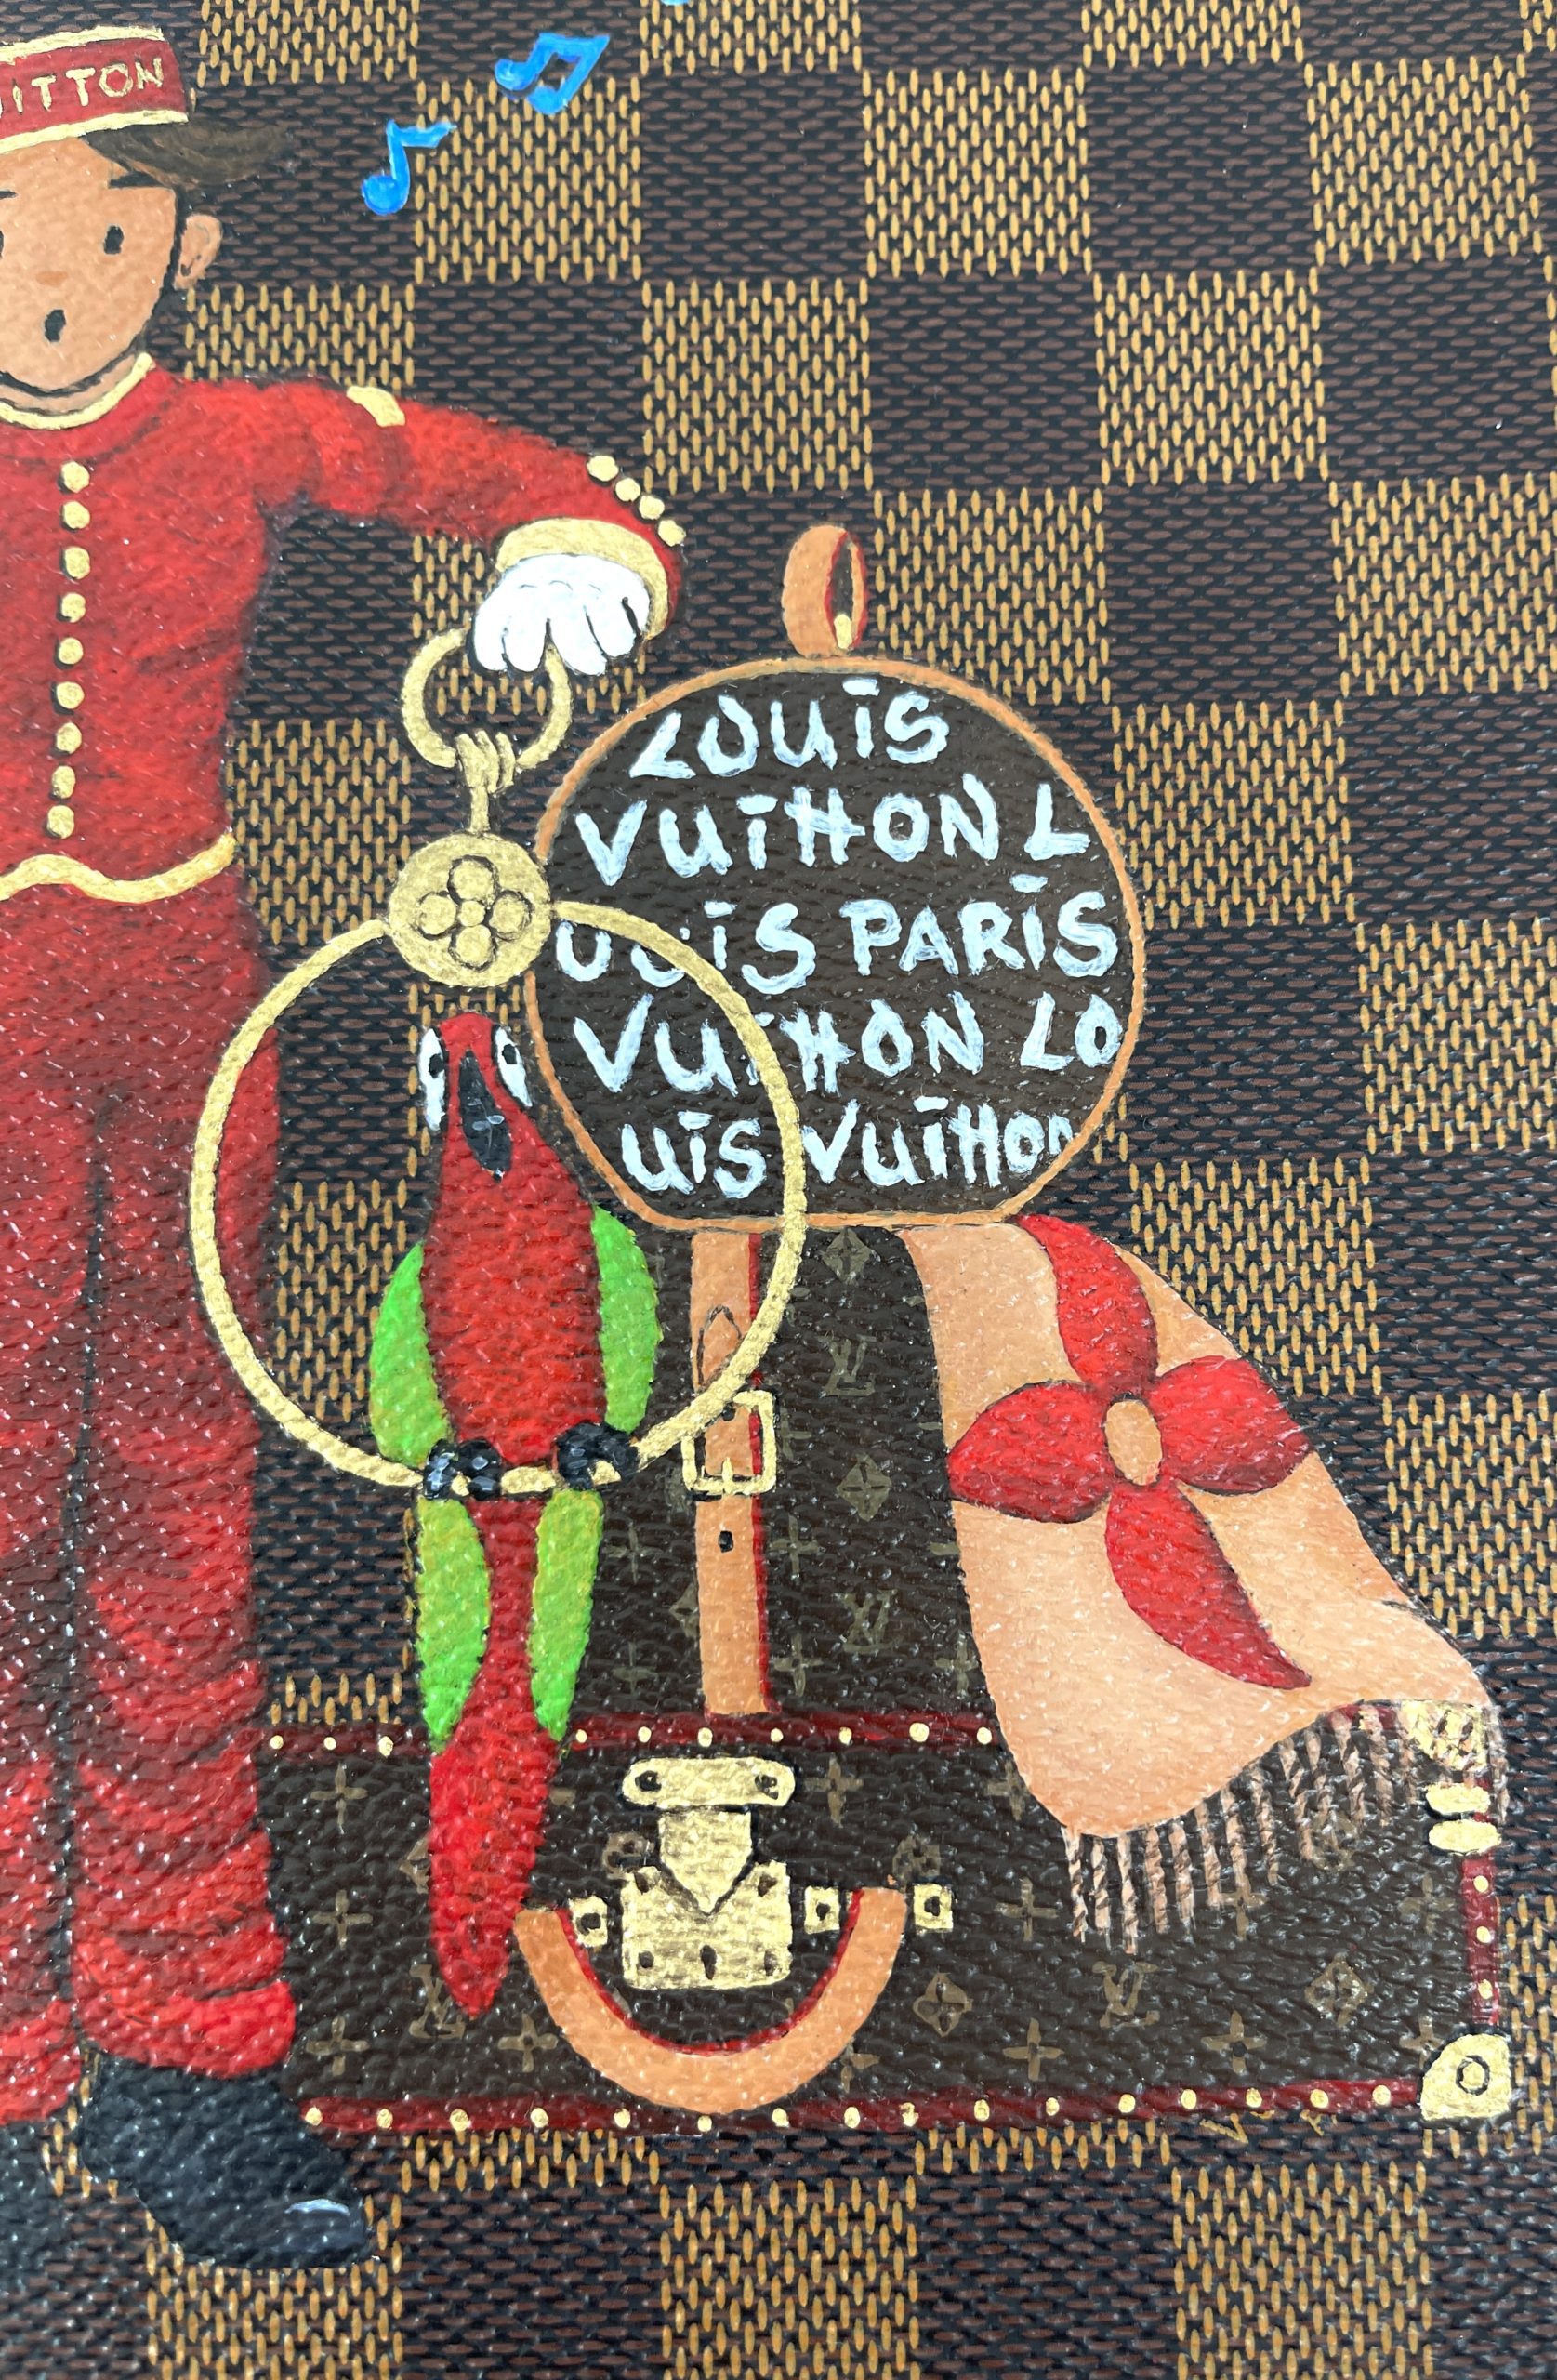 Louis Vuitton Monogram Canvas Necessaire PM Writing Folder